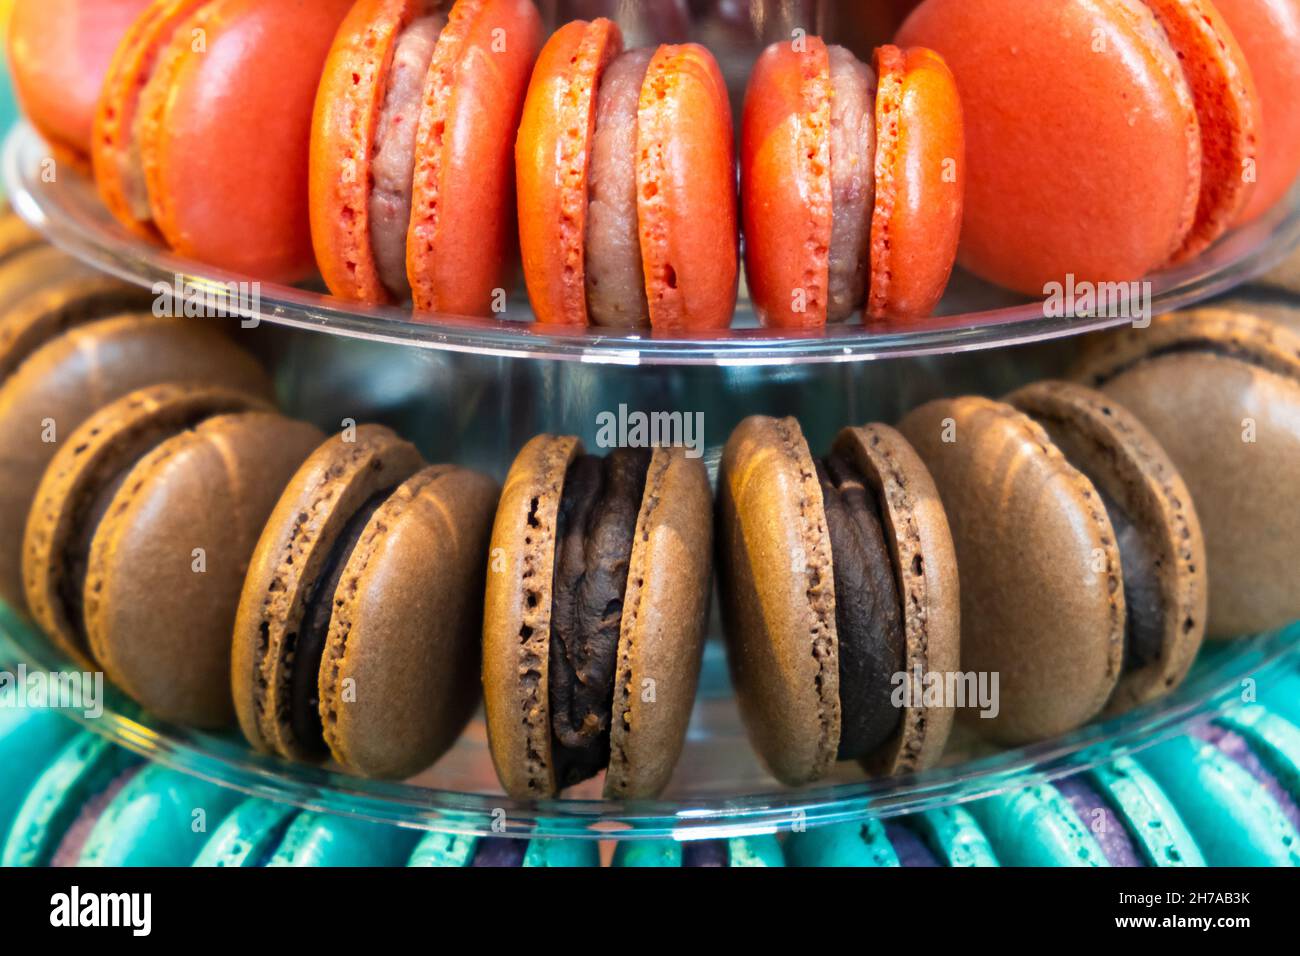 Macarons orange, chocolat et bleu délicieux dessert français pyramide pour la barre de bonbons pour mariage ou fête d'anniversaire. Banque D'Images